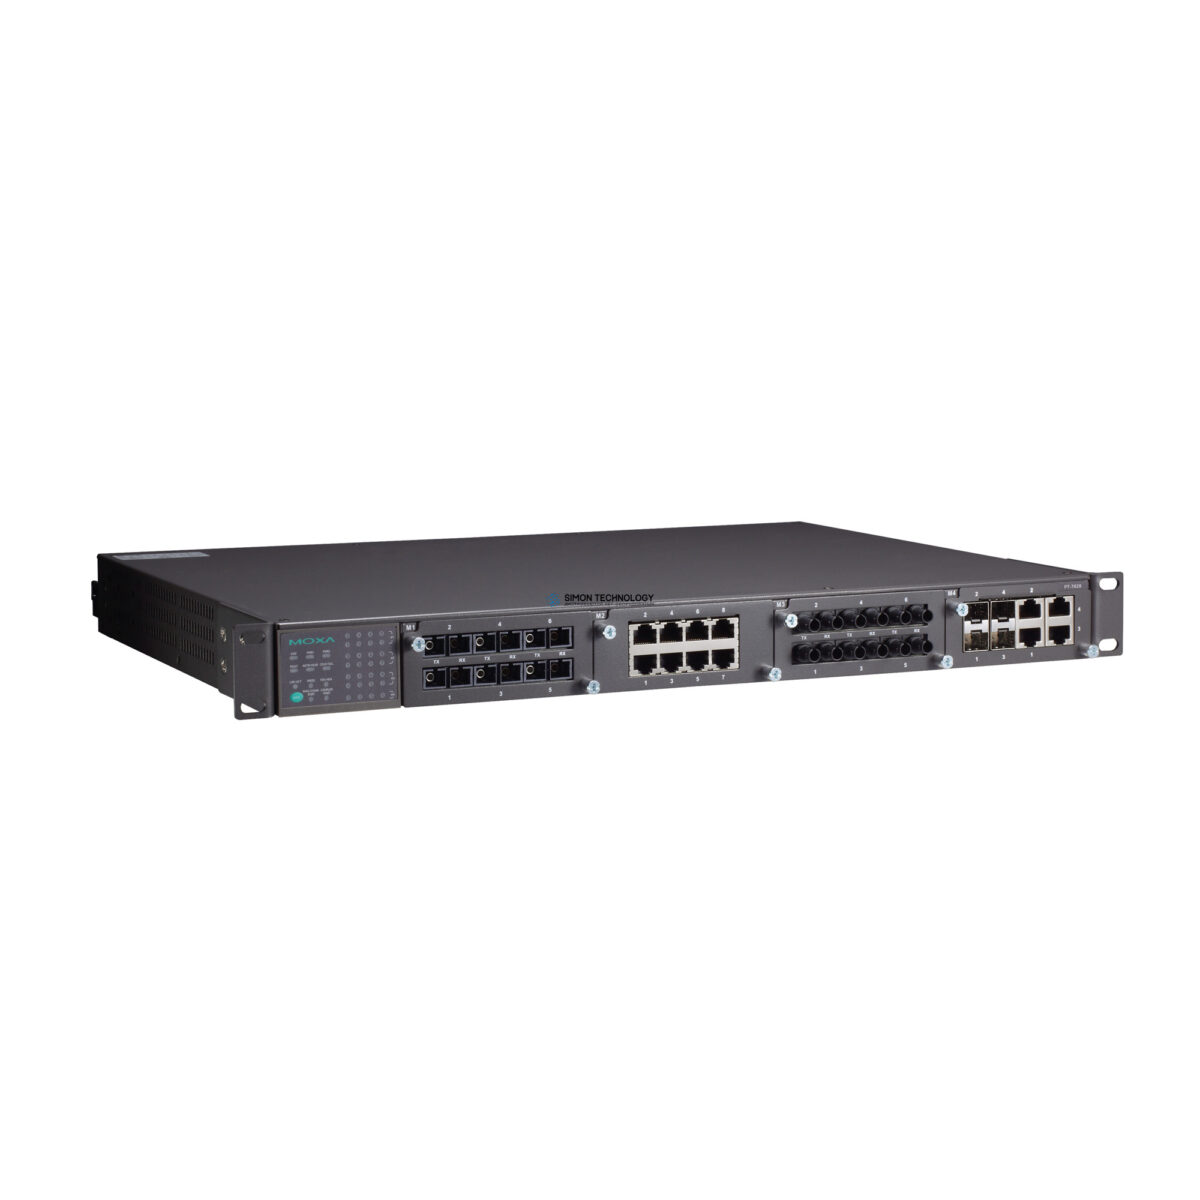 Коммутаторы Moxa Iec 61850-3 24+4G Layer3 Switch 48V+88-300V (PT-7828-R-48-HV)